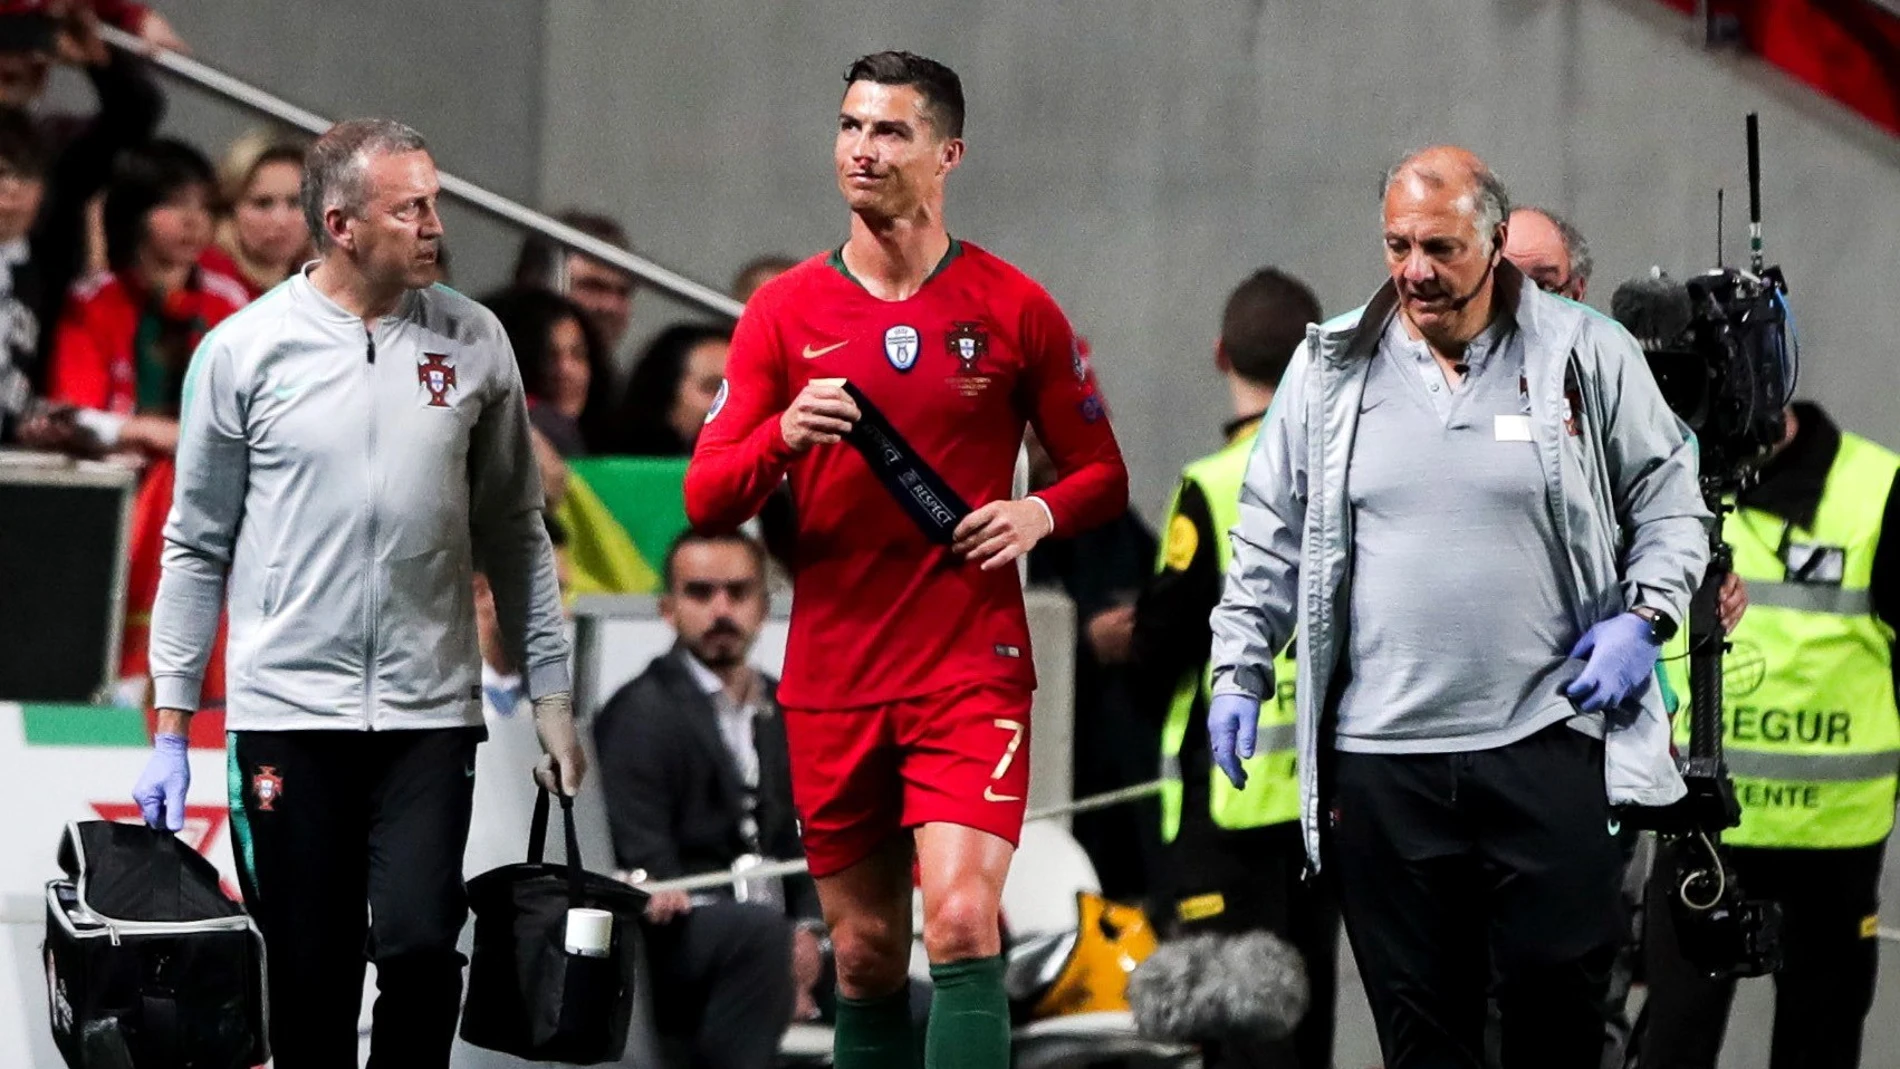 Cristiano Ronaldo se retira lesionado del terreno de juego